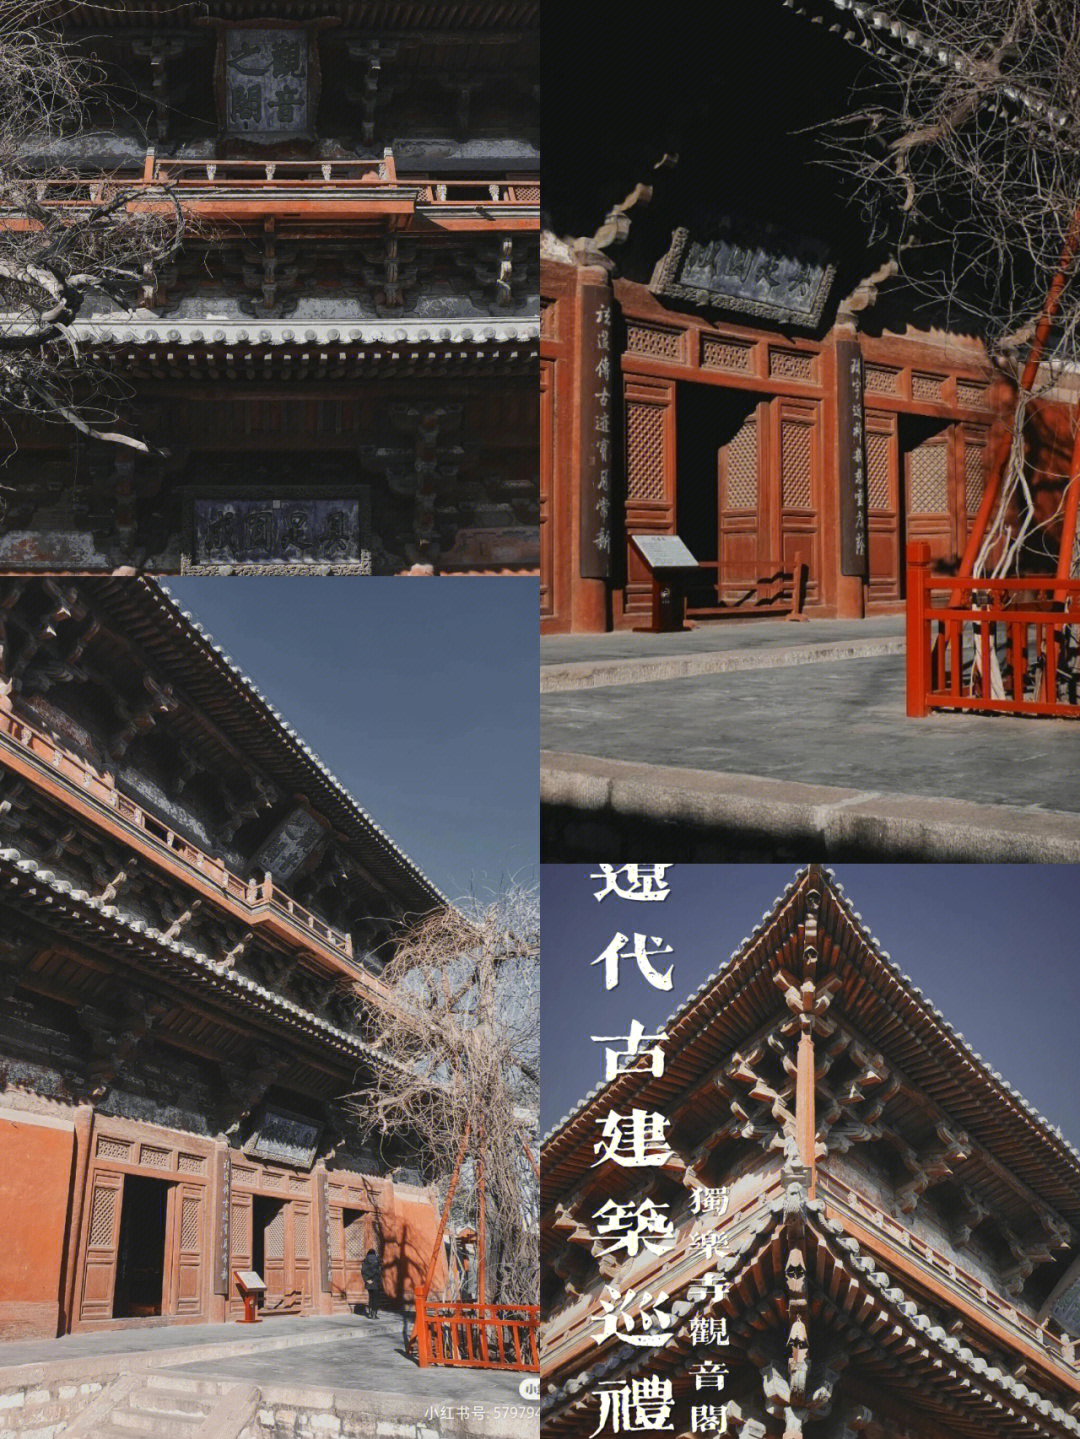 辽代才是真正继承了唐朝建筑的啊,还有很多现存于世的辽代古建筑,而